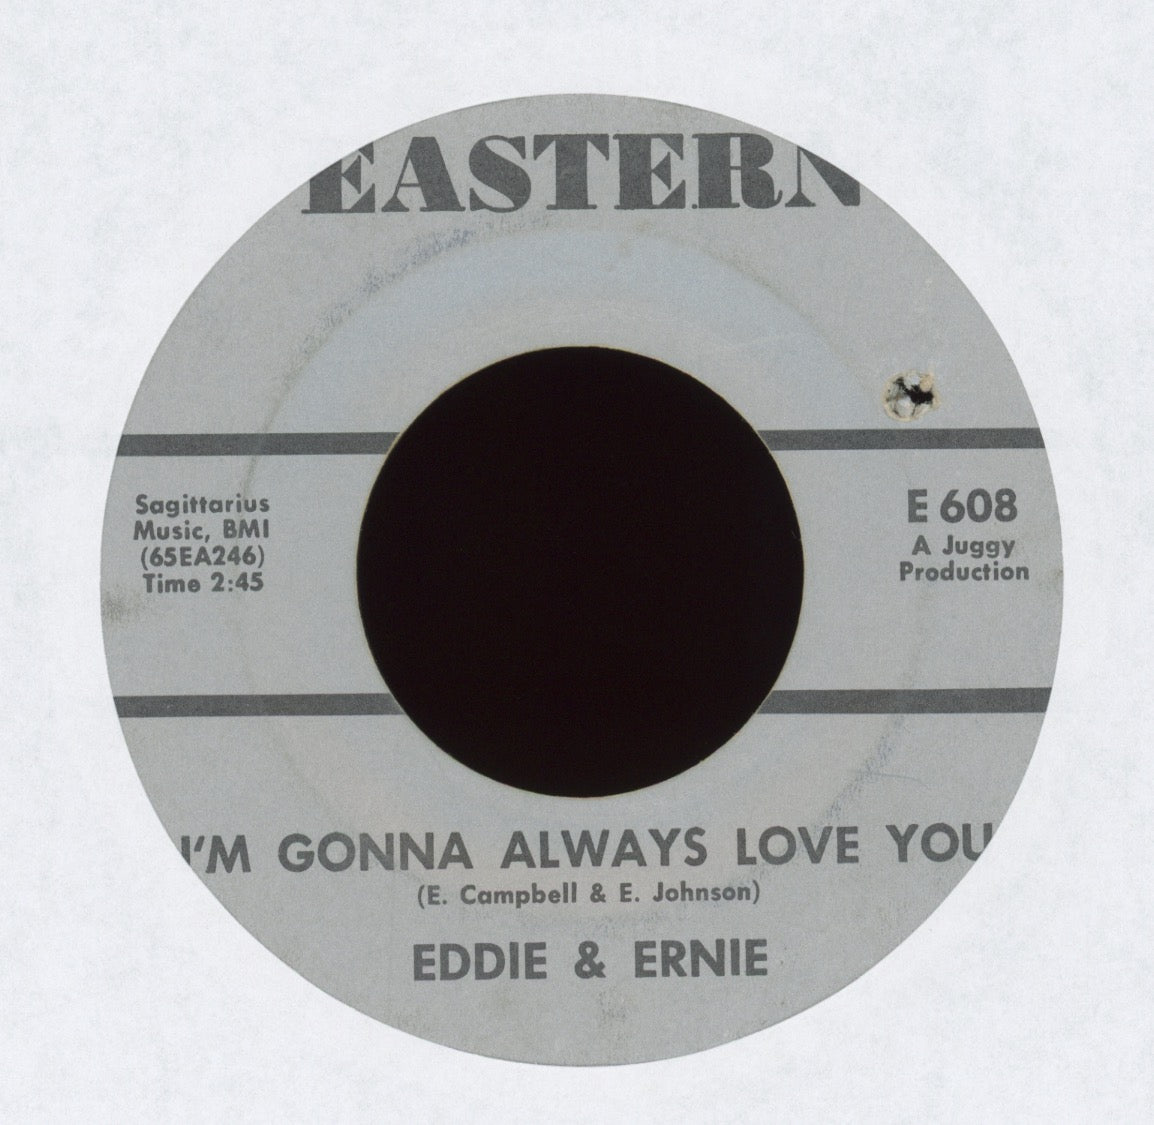 Eddie & Ernie - Outcast on Eastern